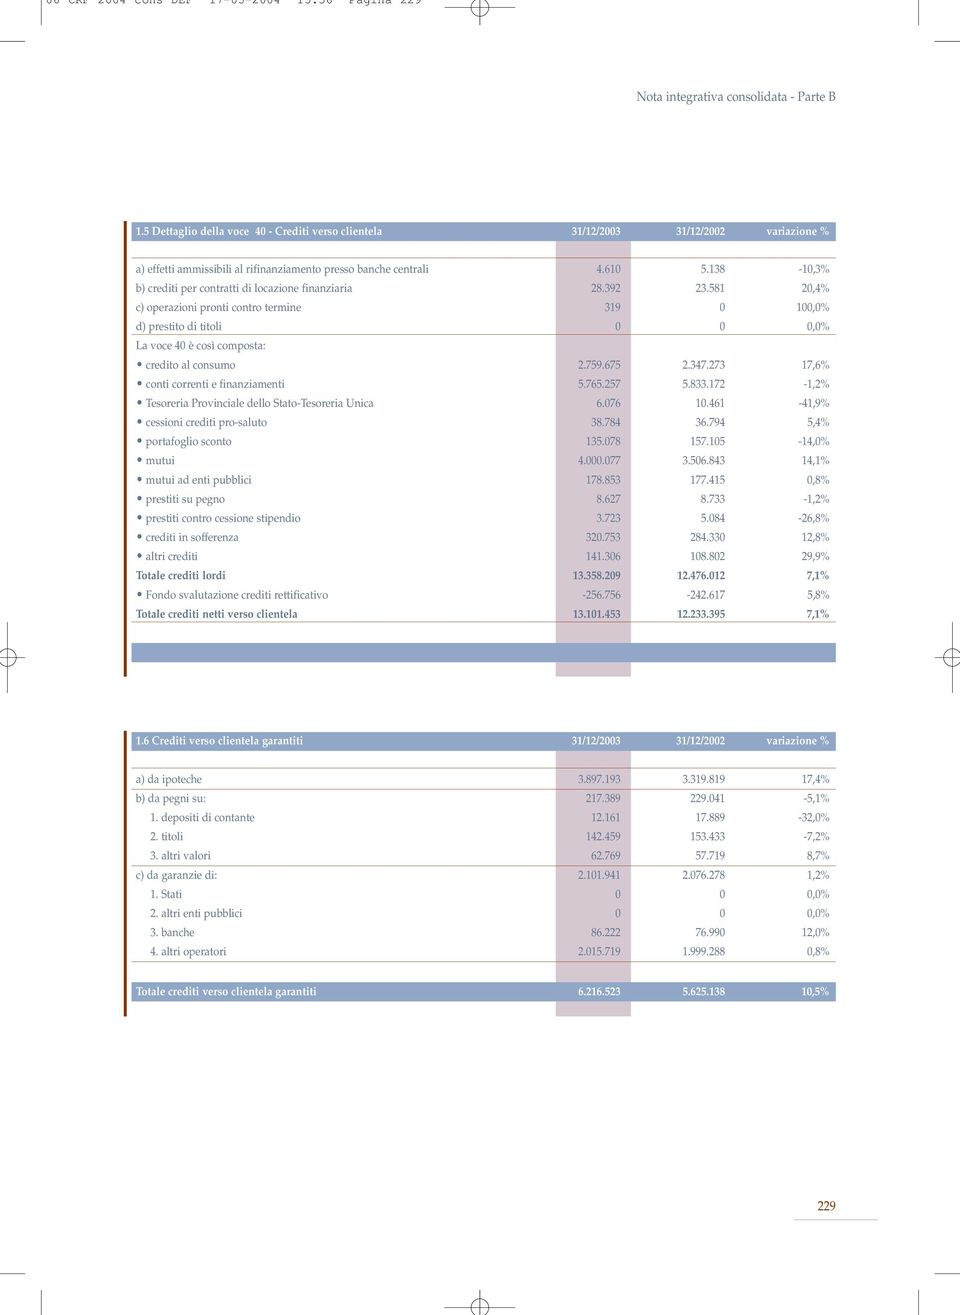 138-10,3% b) crediti per contratti di locazione finanziaria 28.392 23.